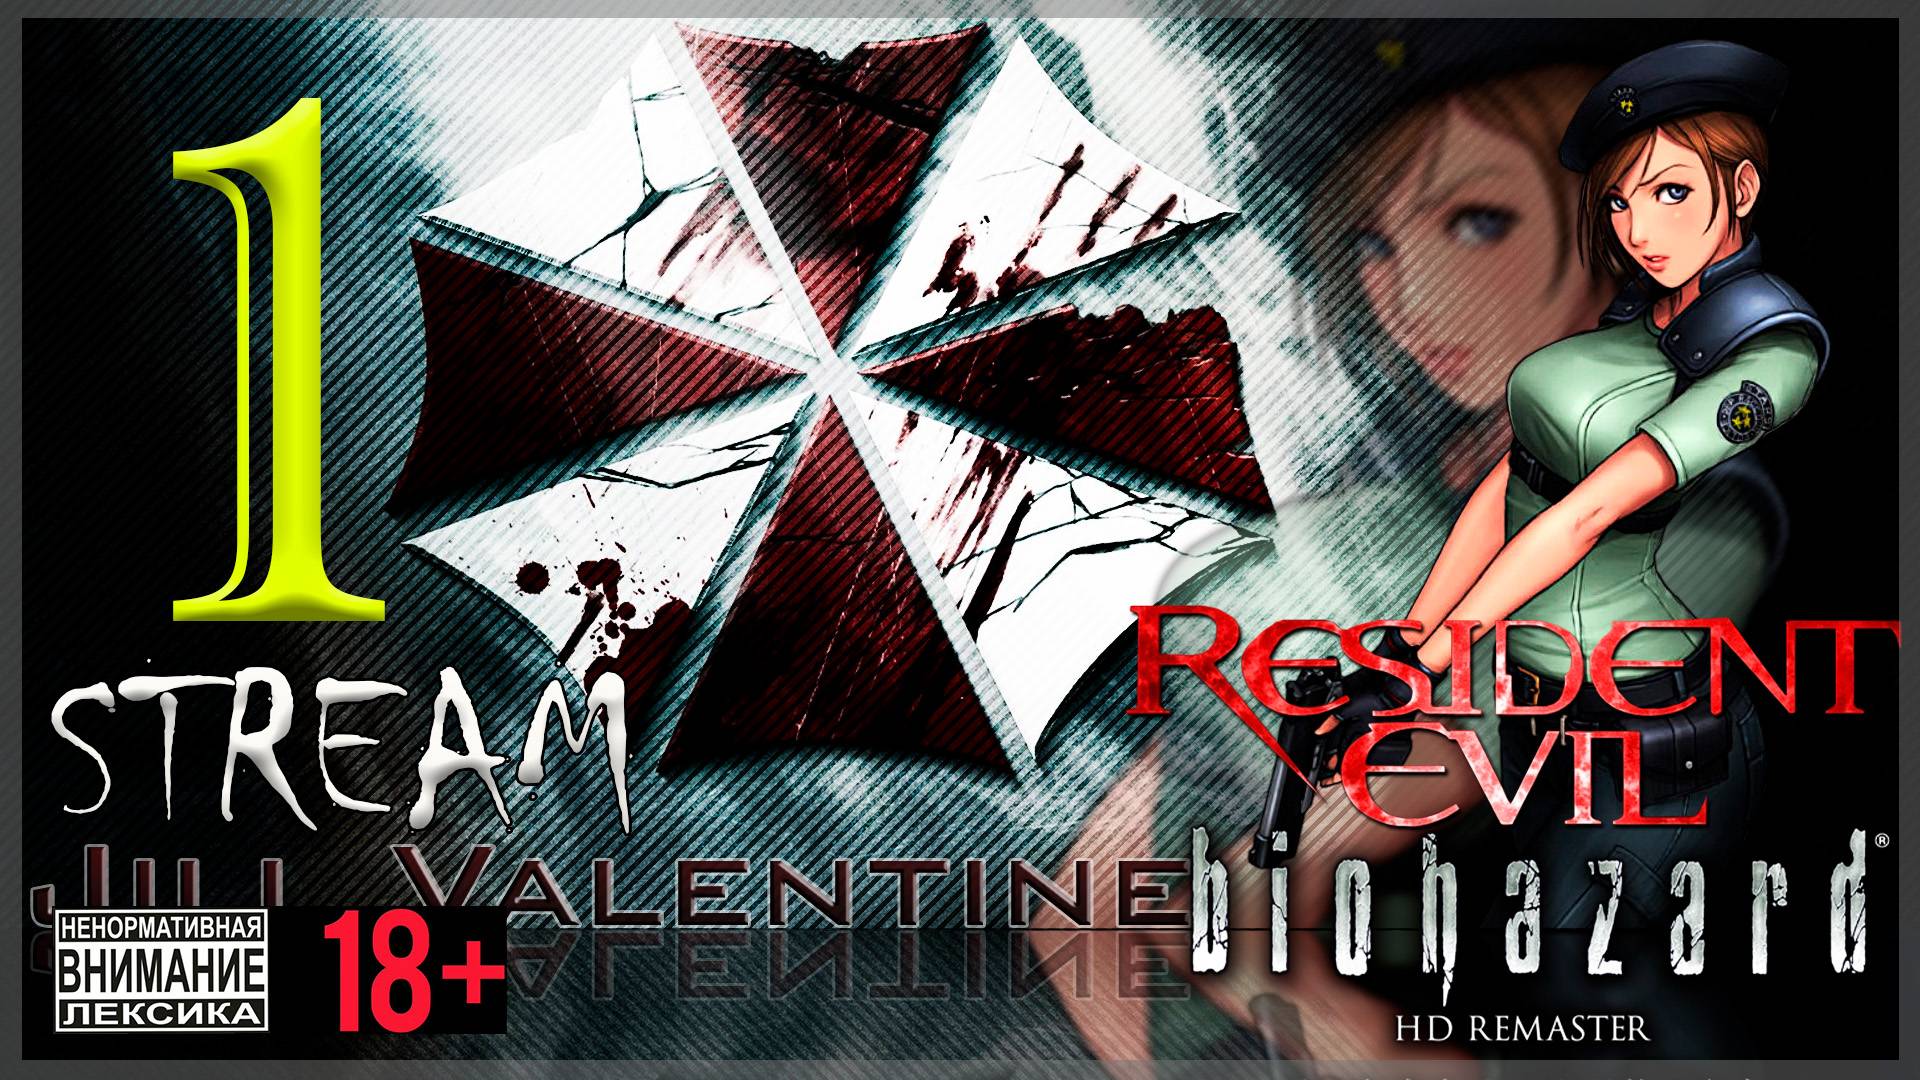 Первое прохождение Resident Evil - Biohazard HD REMASTER #1 Джилл